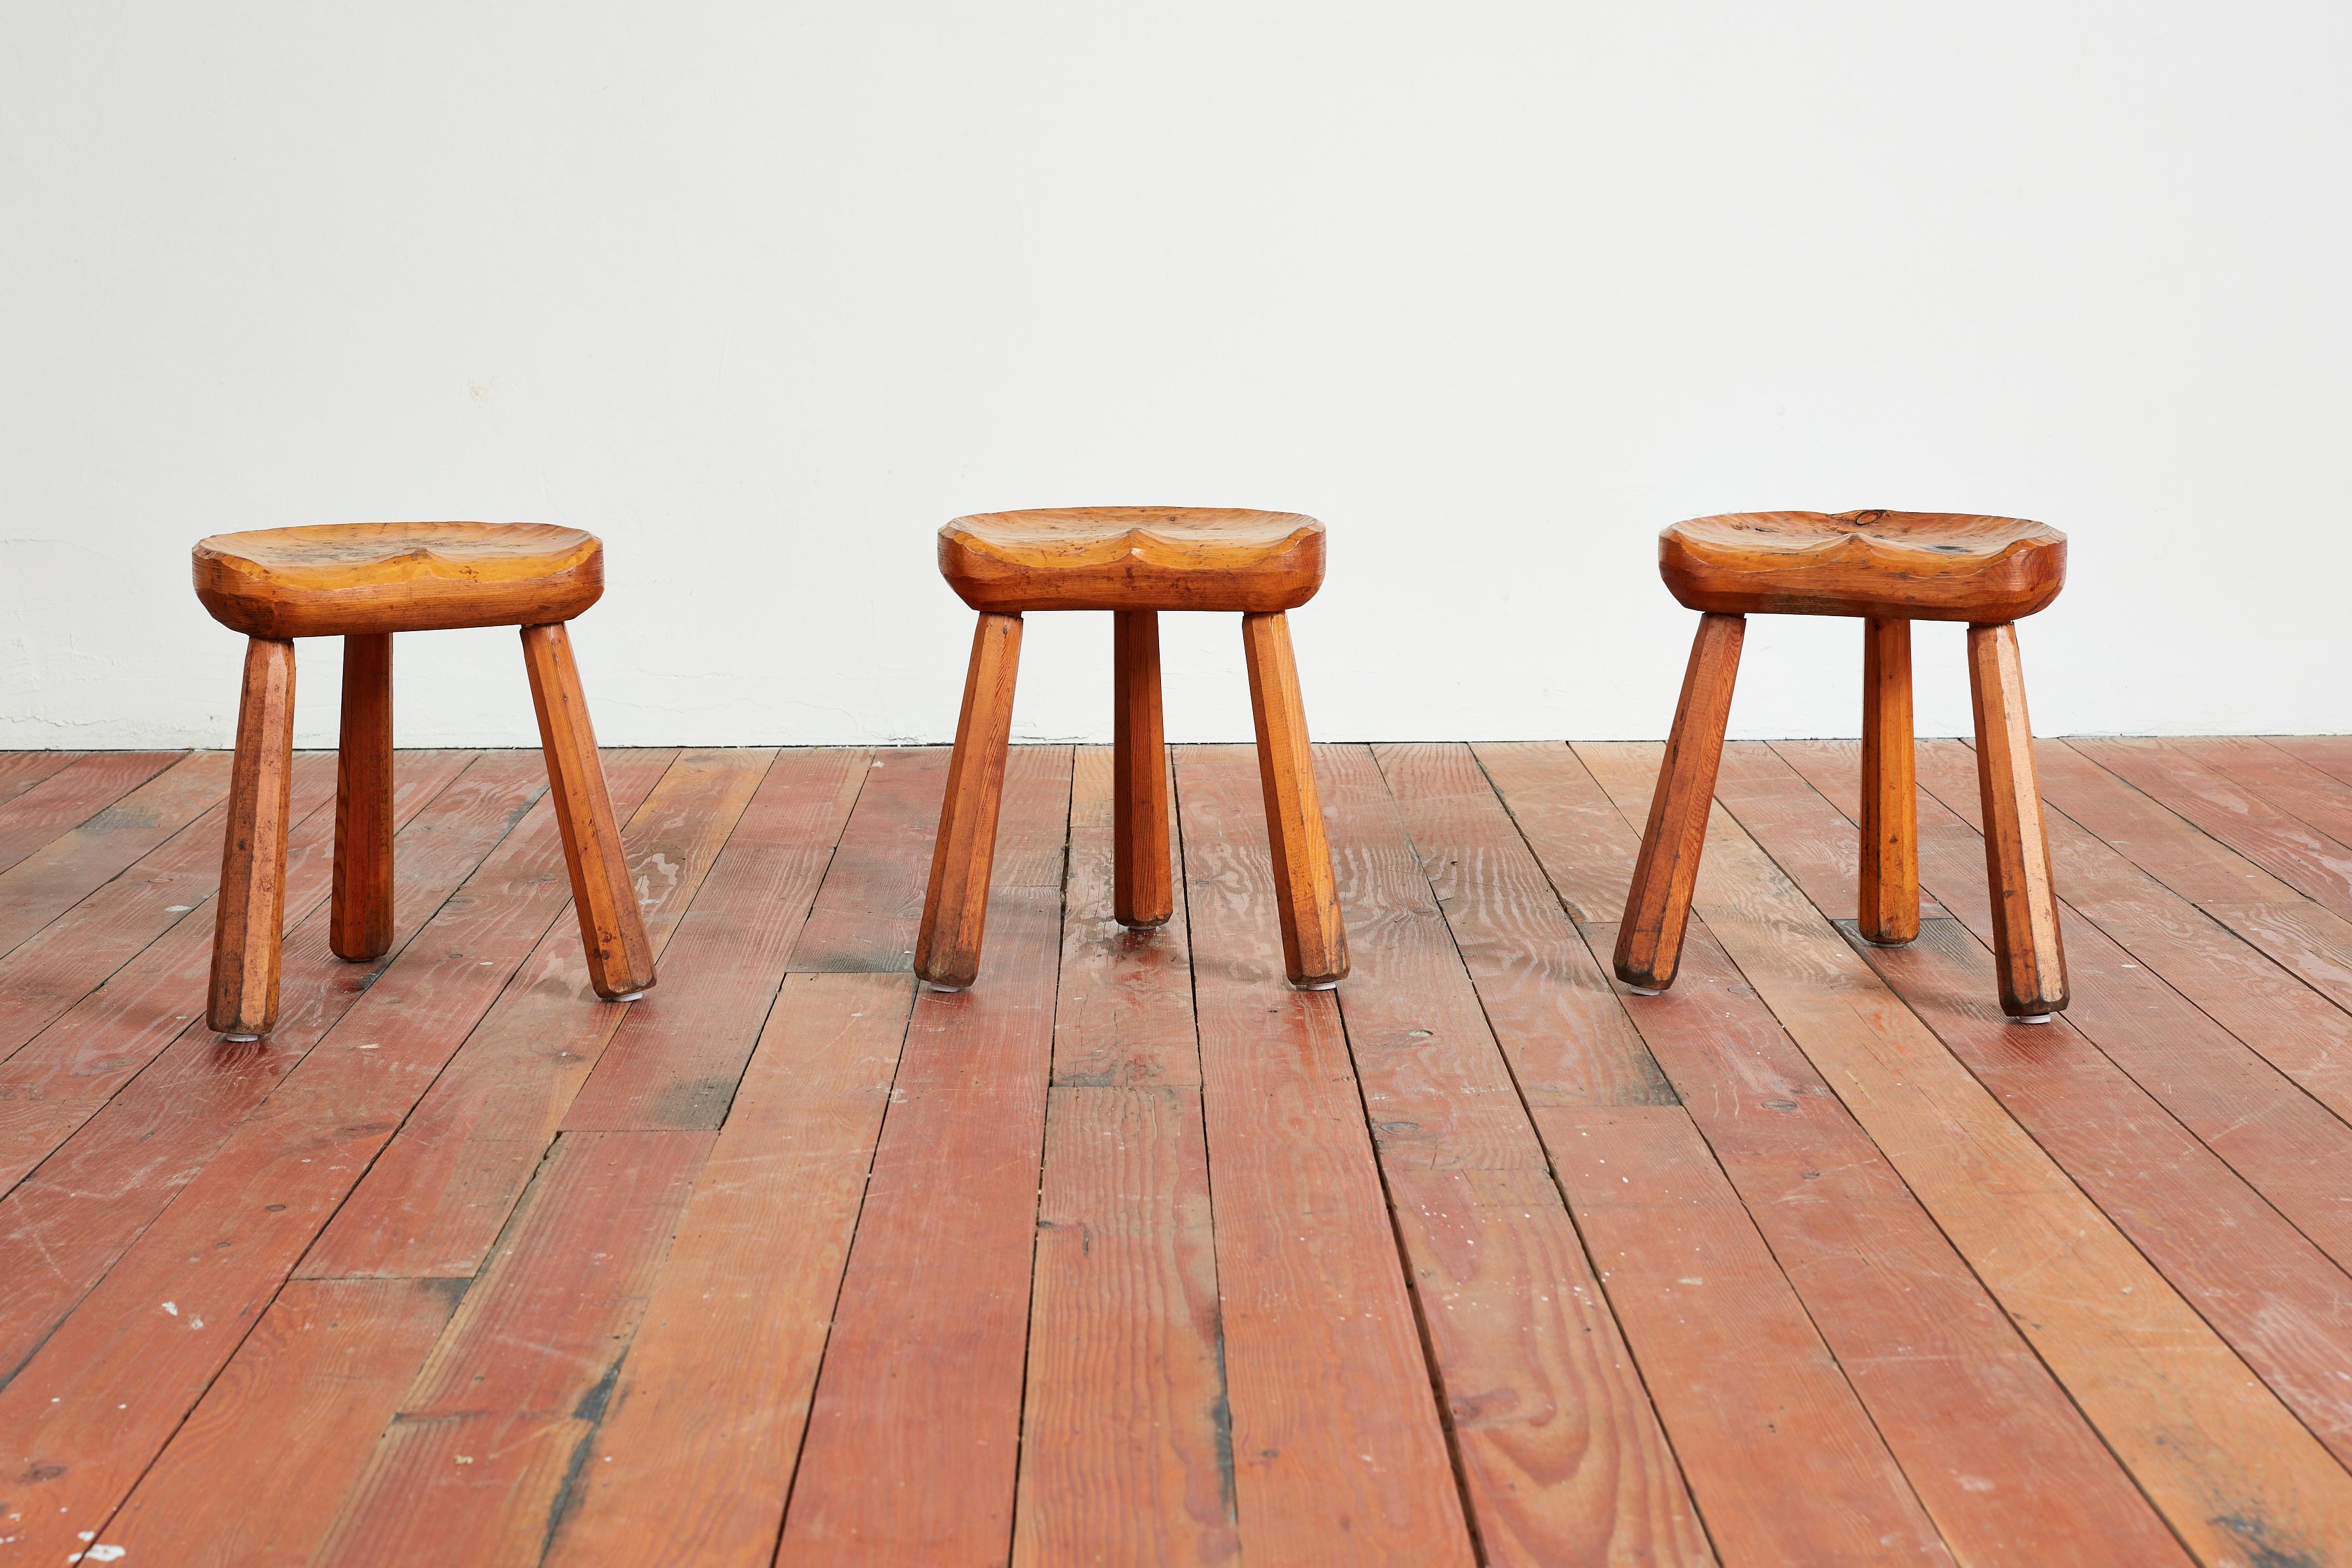 Tabourets tripodes en bois massif sculpté brutaliste
France, vers les années 1940
Les sièges concaves sculptés reposent sur des pieds tripodes.
Prix à l'unité 